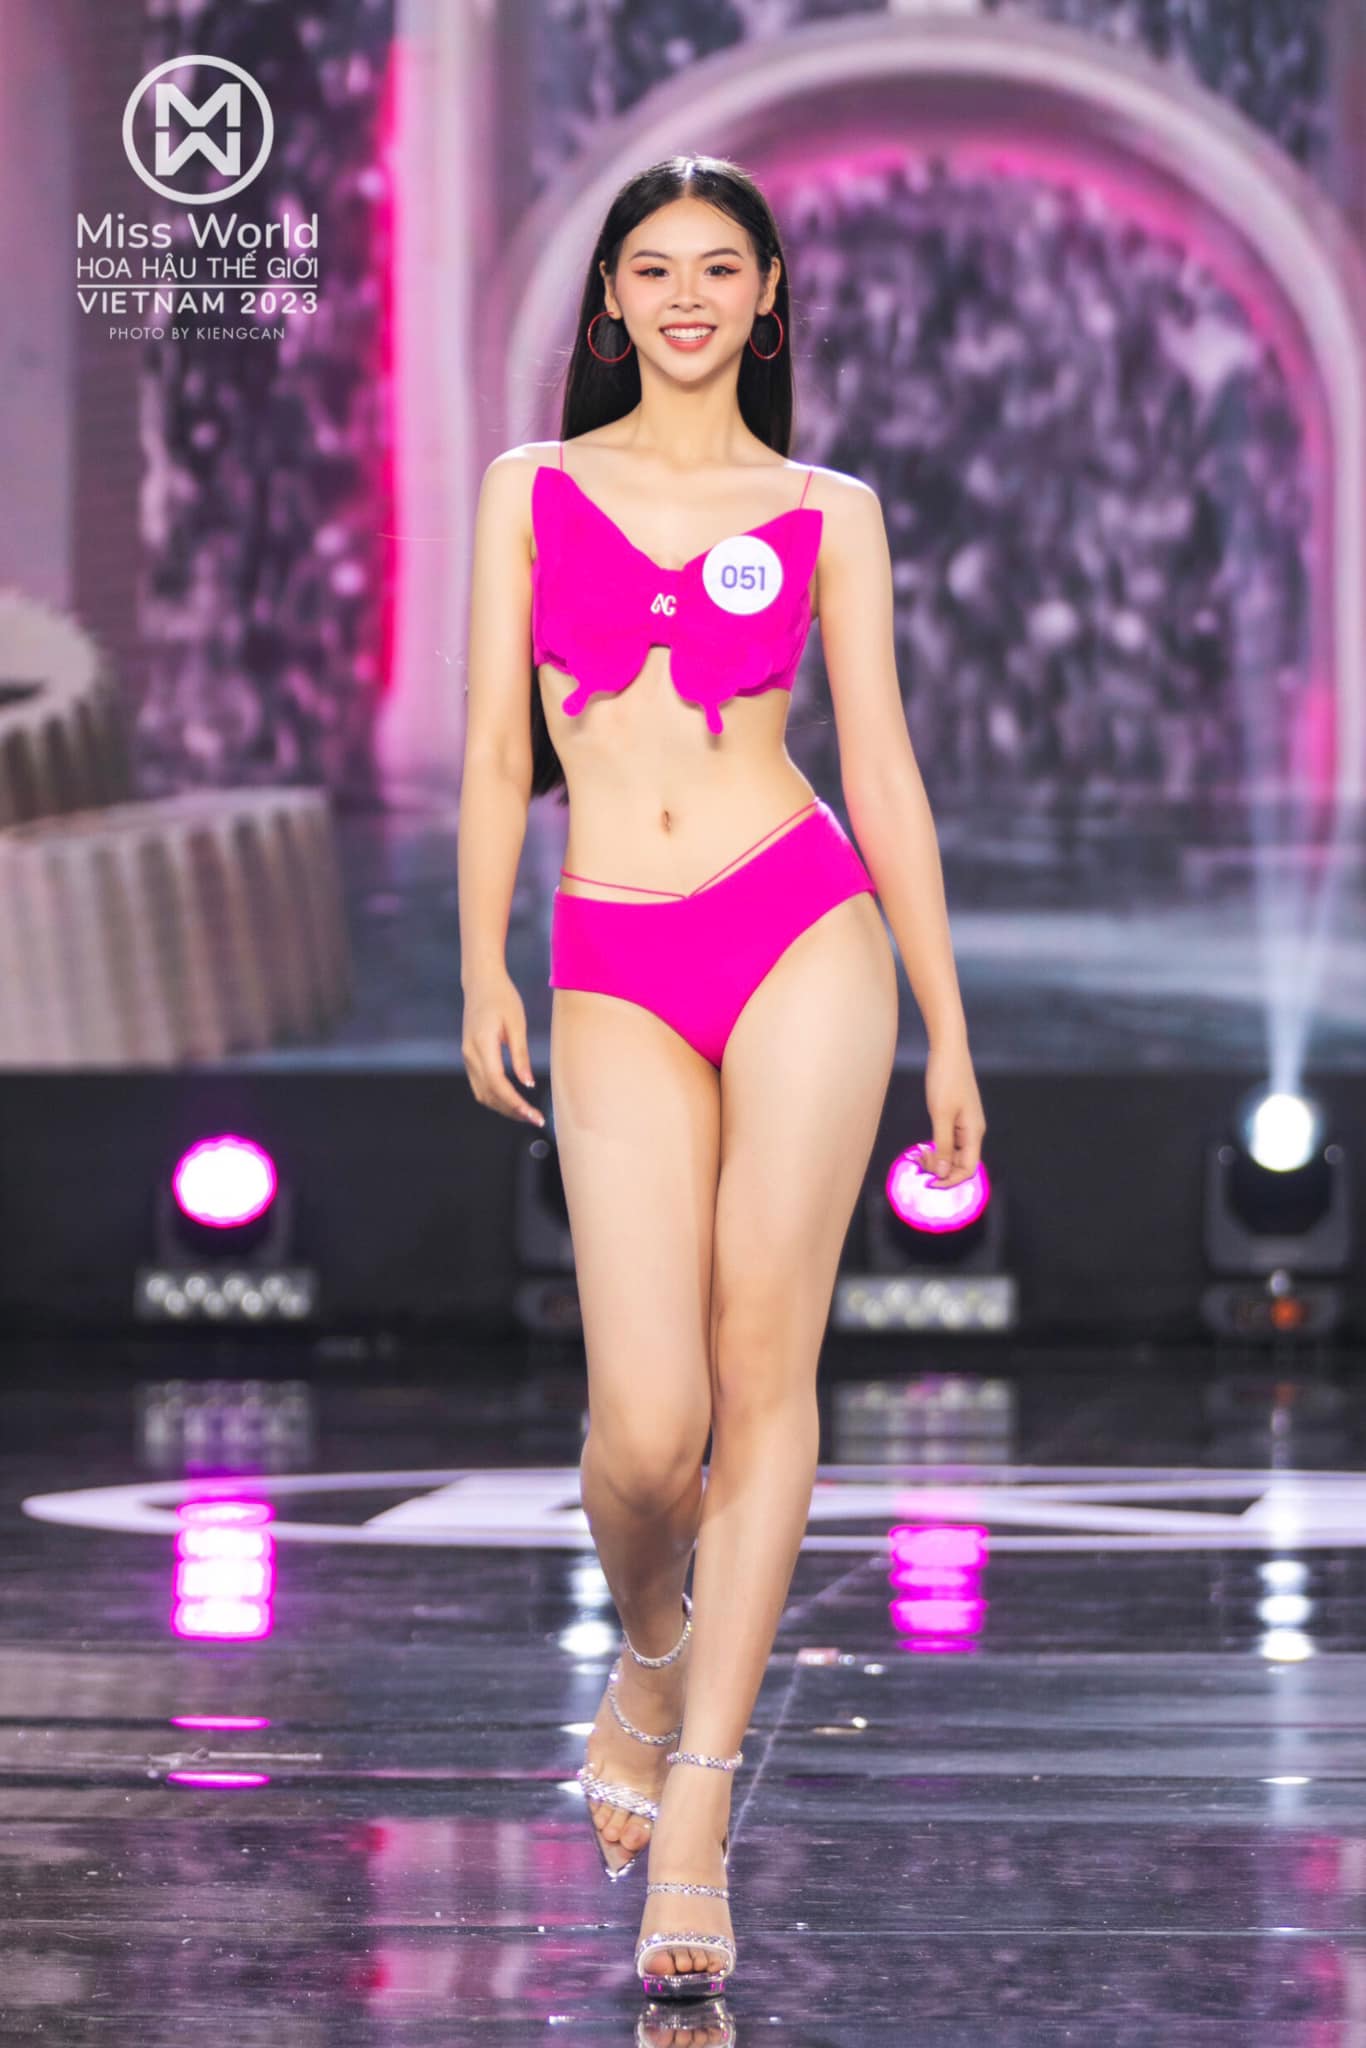 Loạt người đẹp có vòng eo 'con kiến' của Hoa hậu Thế giới Việt Nam 2023 - Ảnh 5.